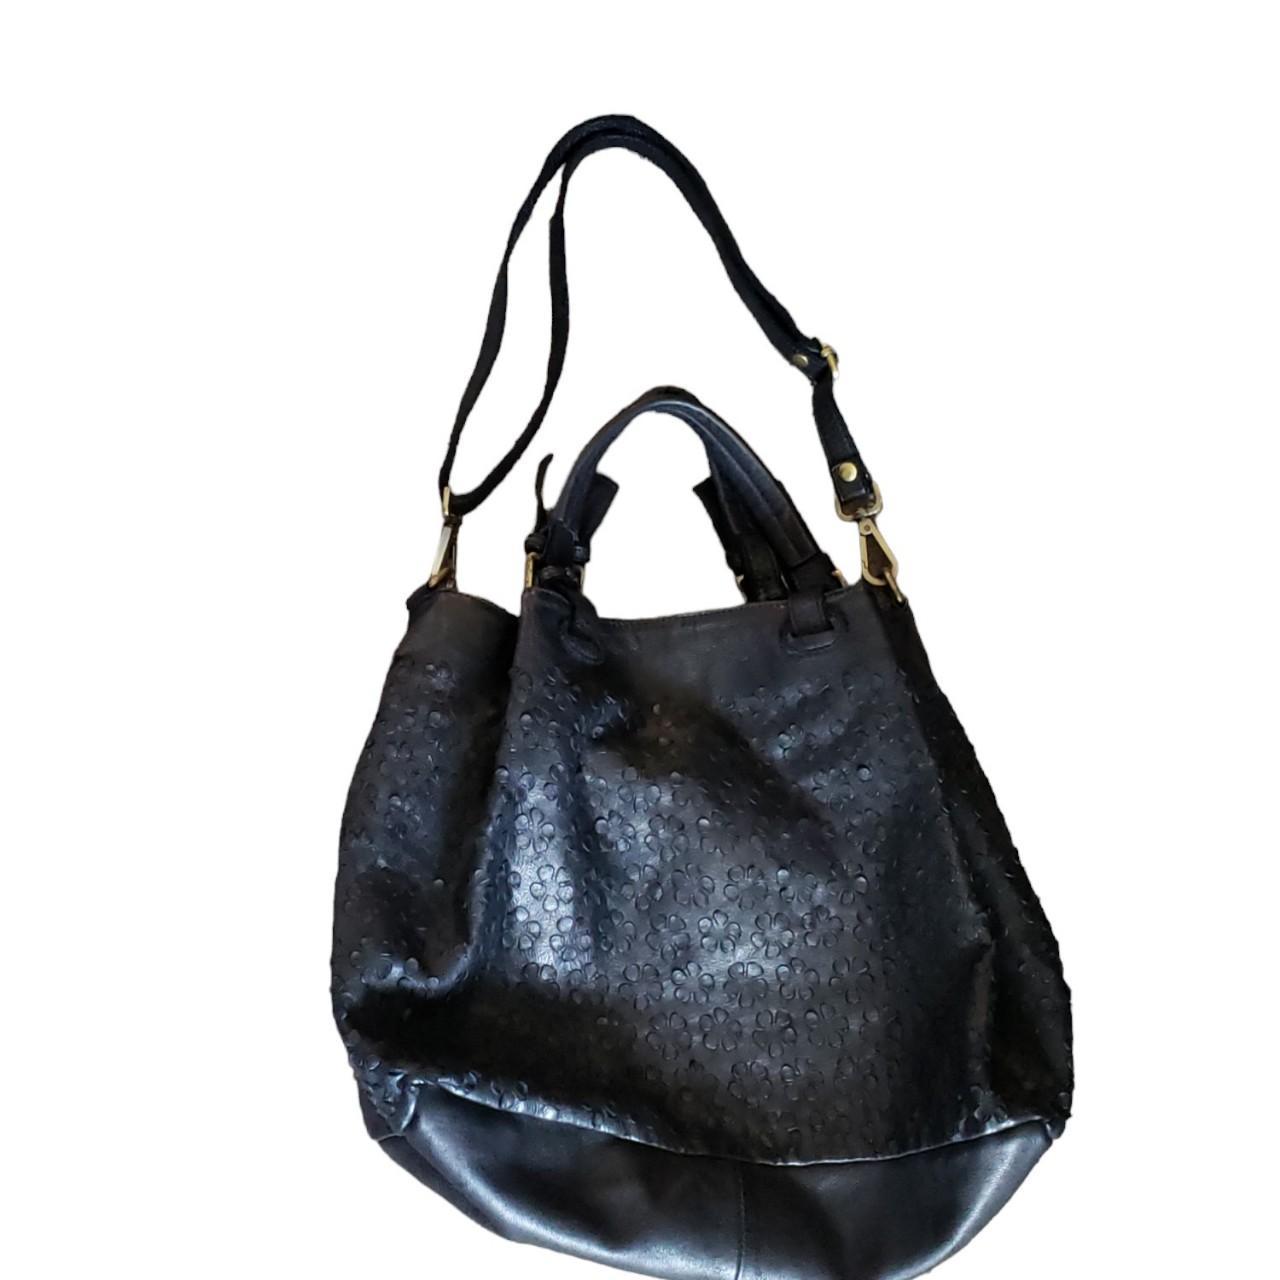 Vera pelle made in Italy Black Leather Shoulder Bag. - Depop